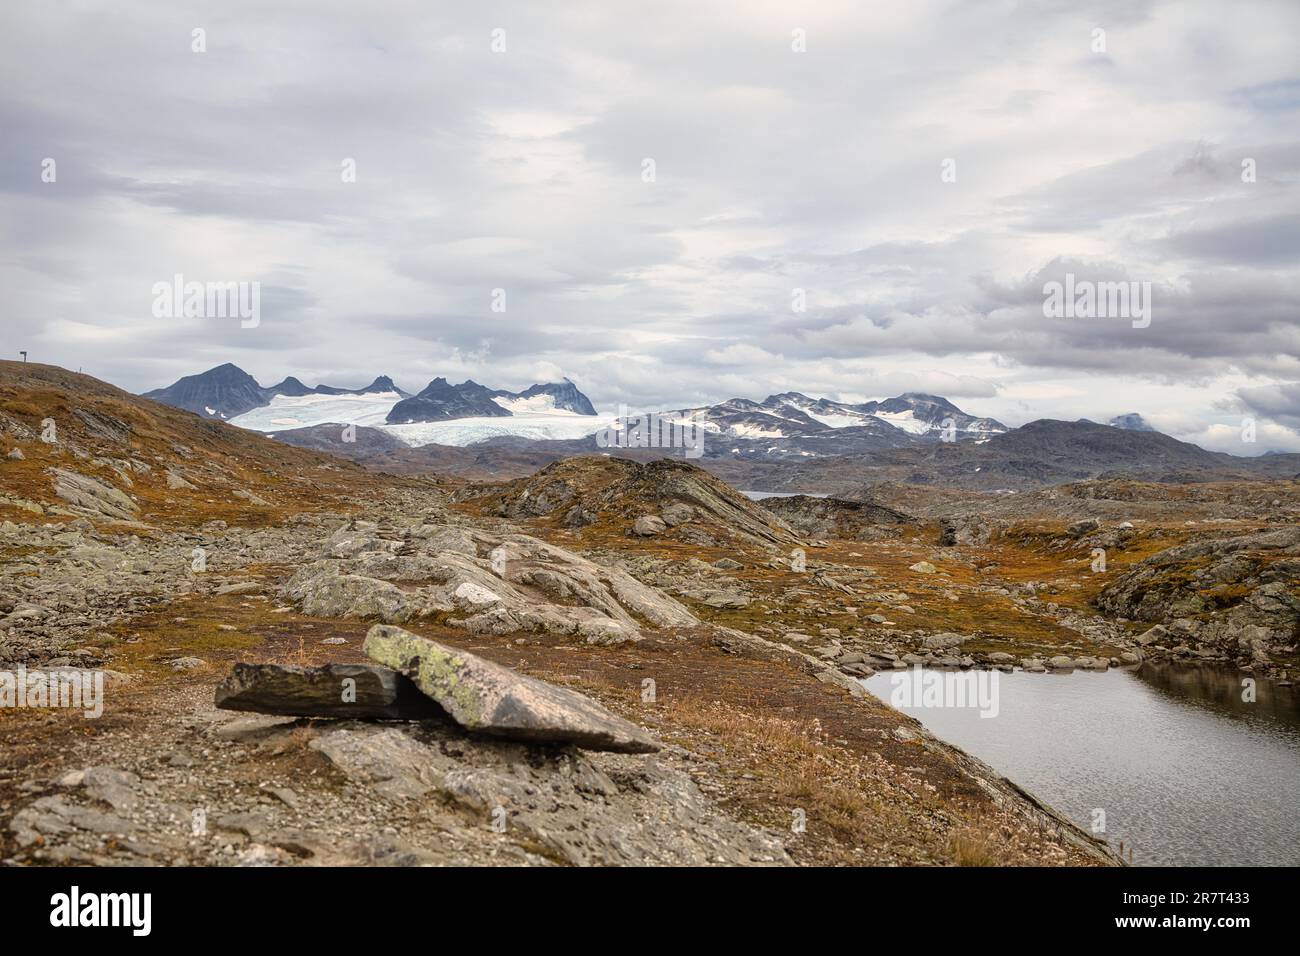 Mountains at Snofjellet, Breheimen National Park, Sogn og Fjordane, Norway  Stock Photo - Alamy